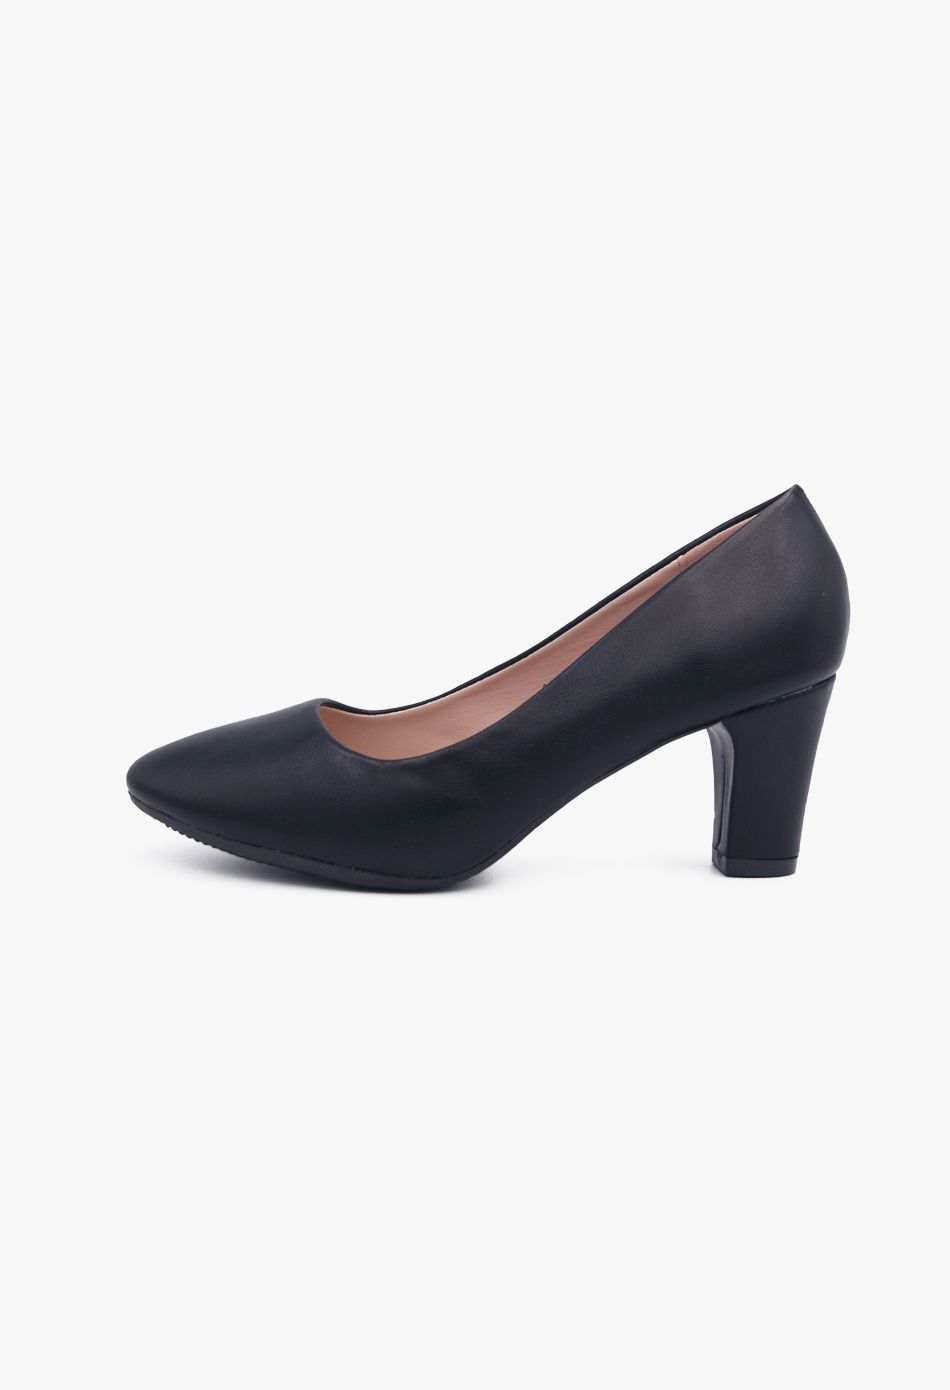 Suede Γυναικεία Πέδιλα με Χοντρό Χαμηλό Τακούνι σε Μαύρο Χρώμα / YU-231-black Ανοιχτά Παπούτσια joya.gr